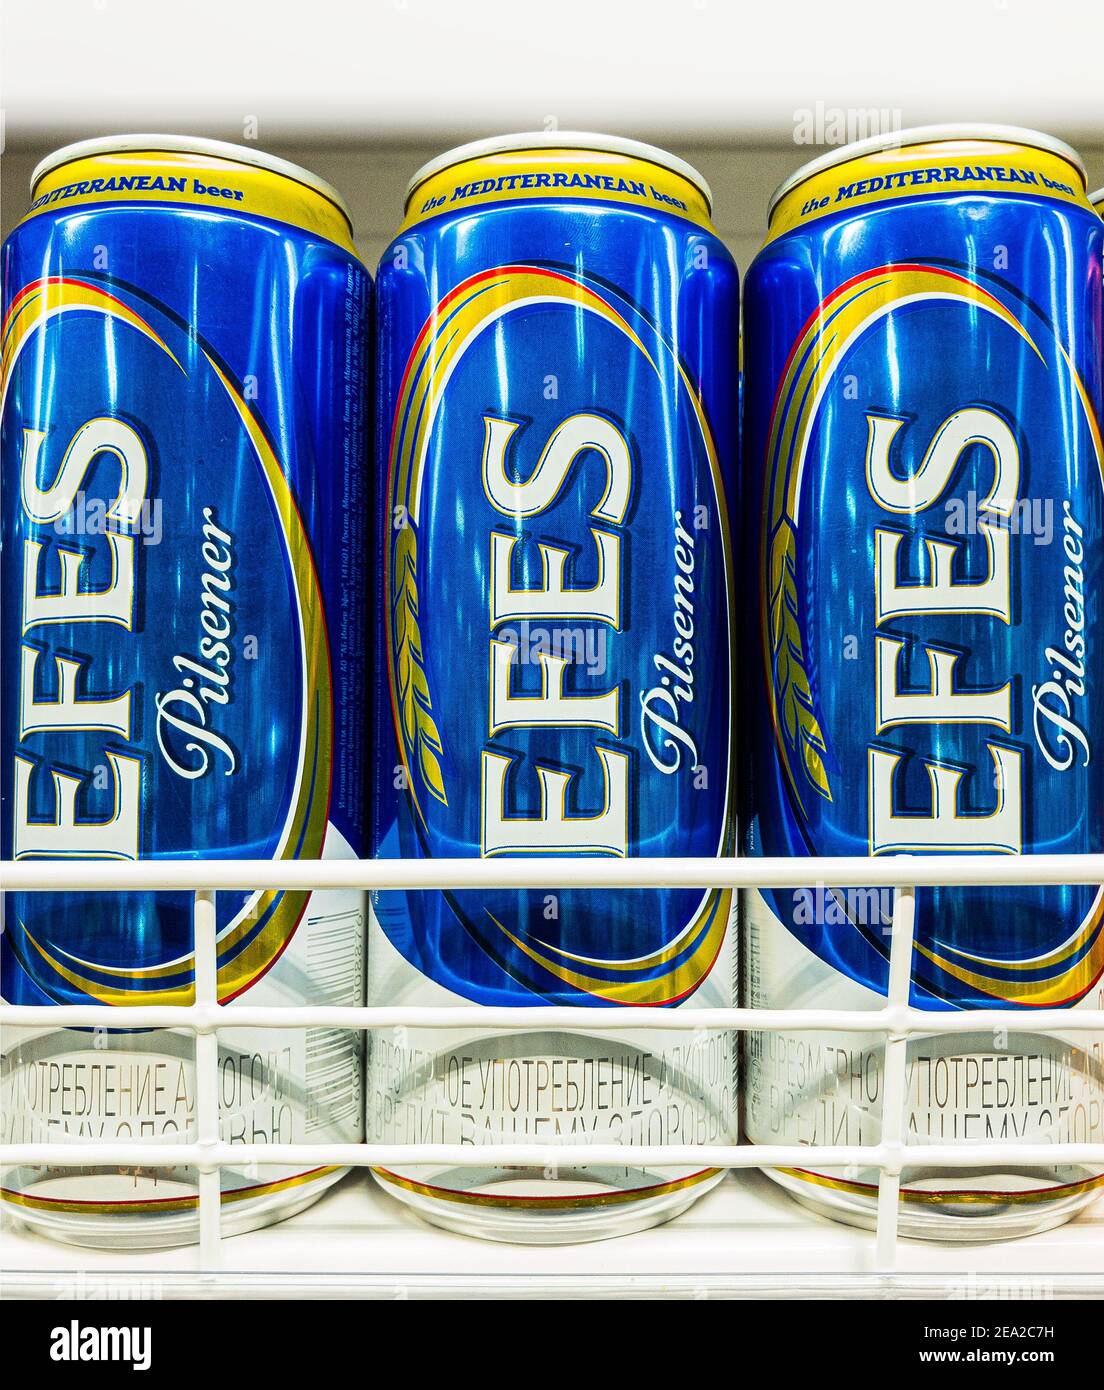 Russland, 2021: Efes Pilsener Bier in Blechdosen im Supermarkt Regal stehen Stockfoto